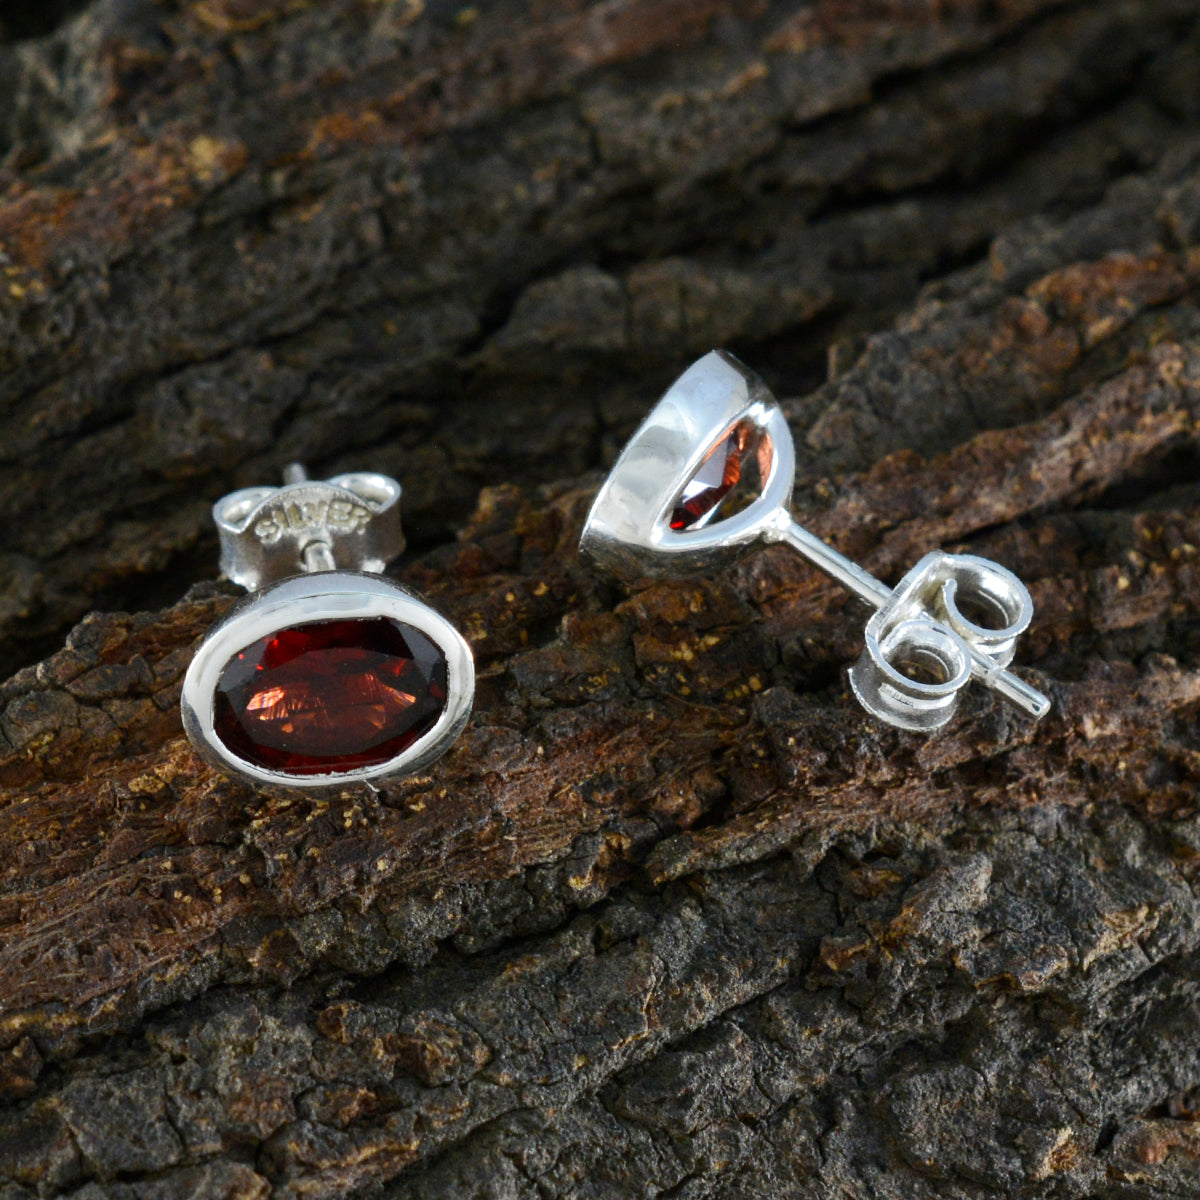 Riyo Ästhetischer 925er Sterlingsilber-Ohrring für Mädchen, Granat-Ohrring, Lünettenfassung, roter Ohrring-Bolzen-Ohrring